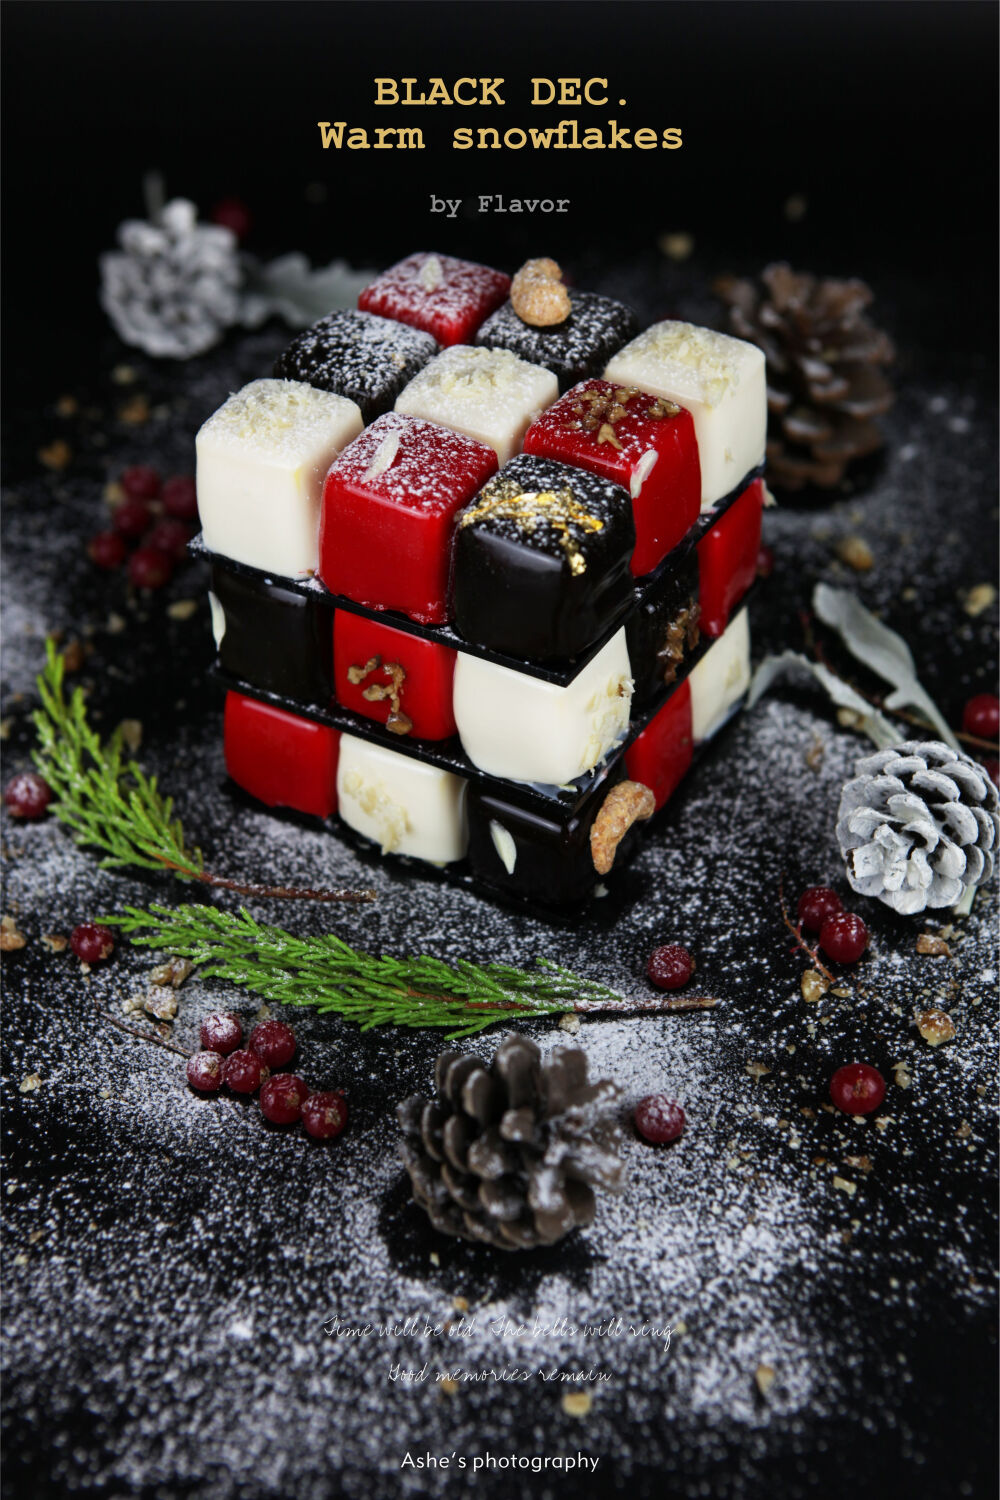 黑色的12月
却有温暖的雪❄️
来自+赋味团队定制蛋糕系列